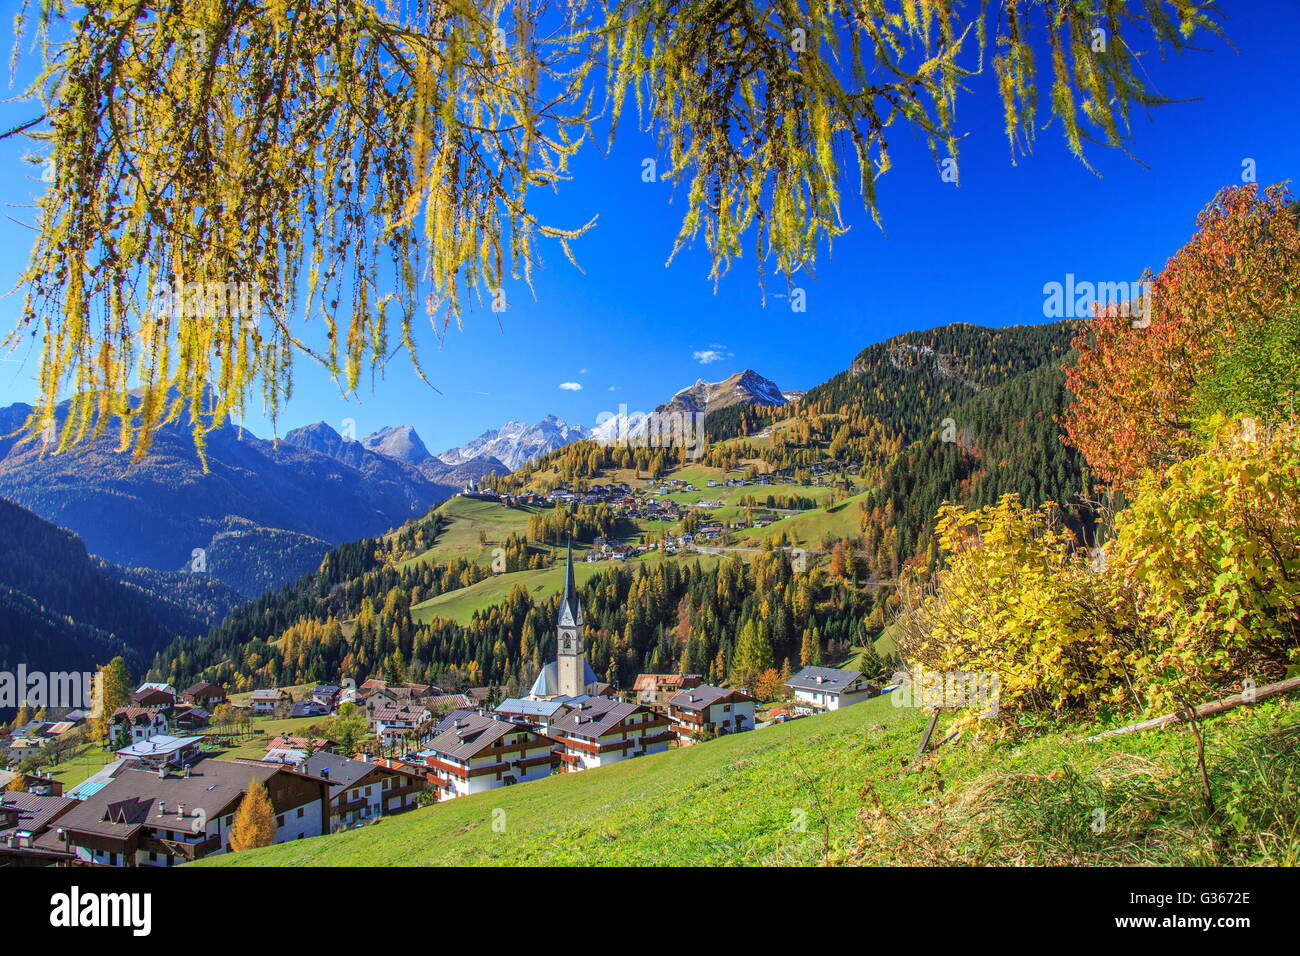 Couleurs d'automne images le village alpin entouré de bois selva val fiorentina de cadore belluno dolomites Vénétie Italie Europe Banque D'Images